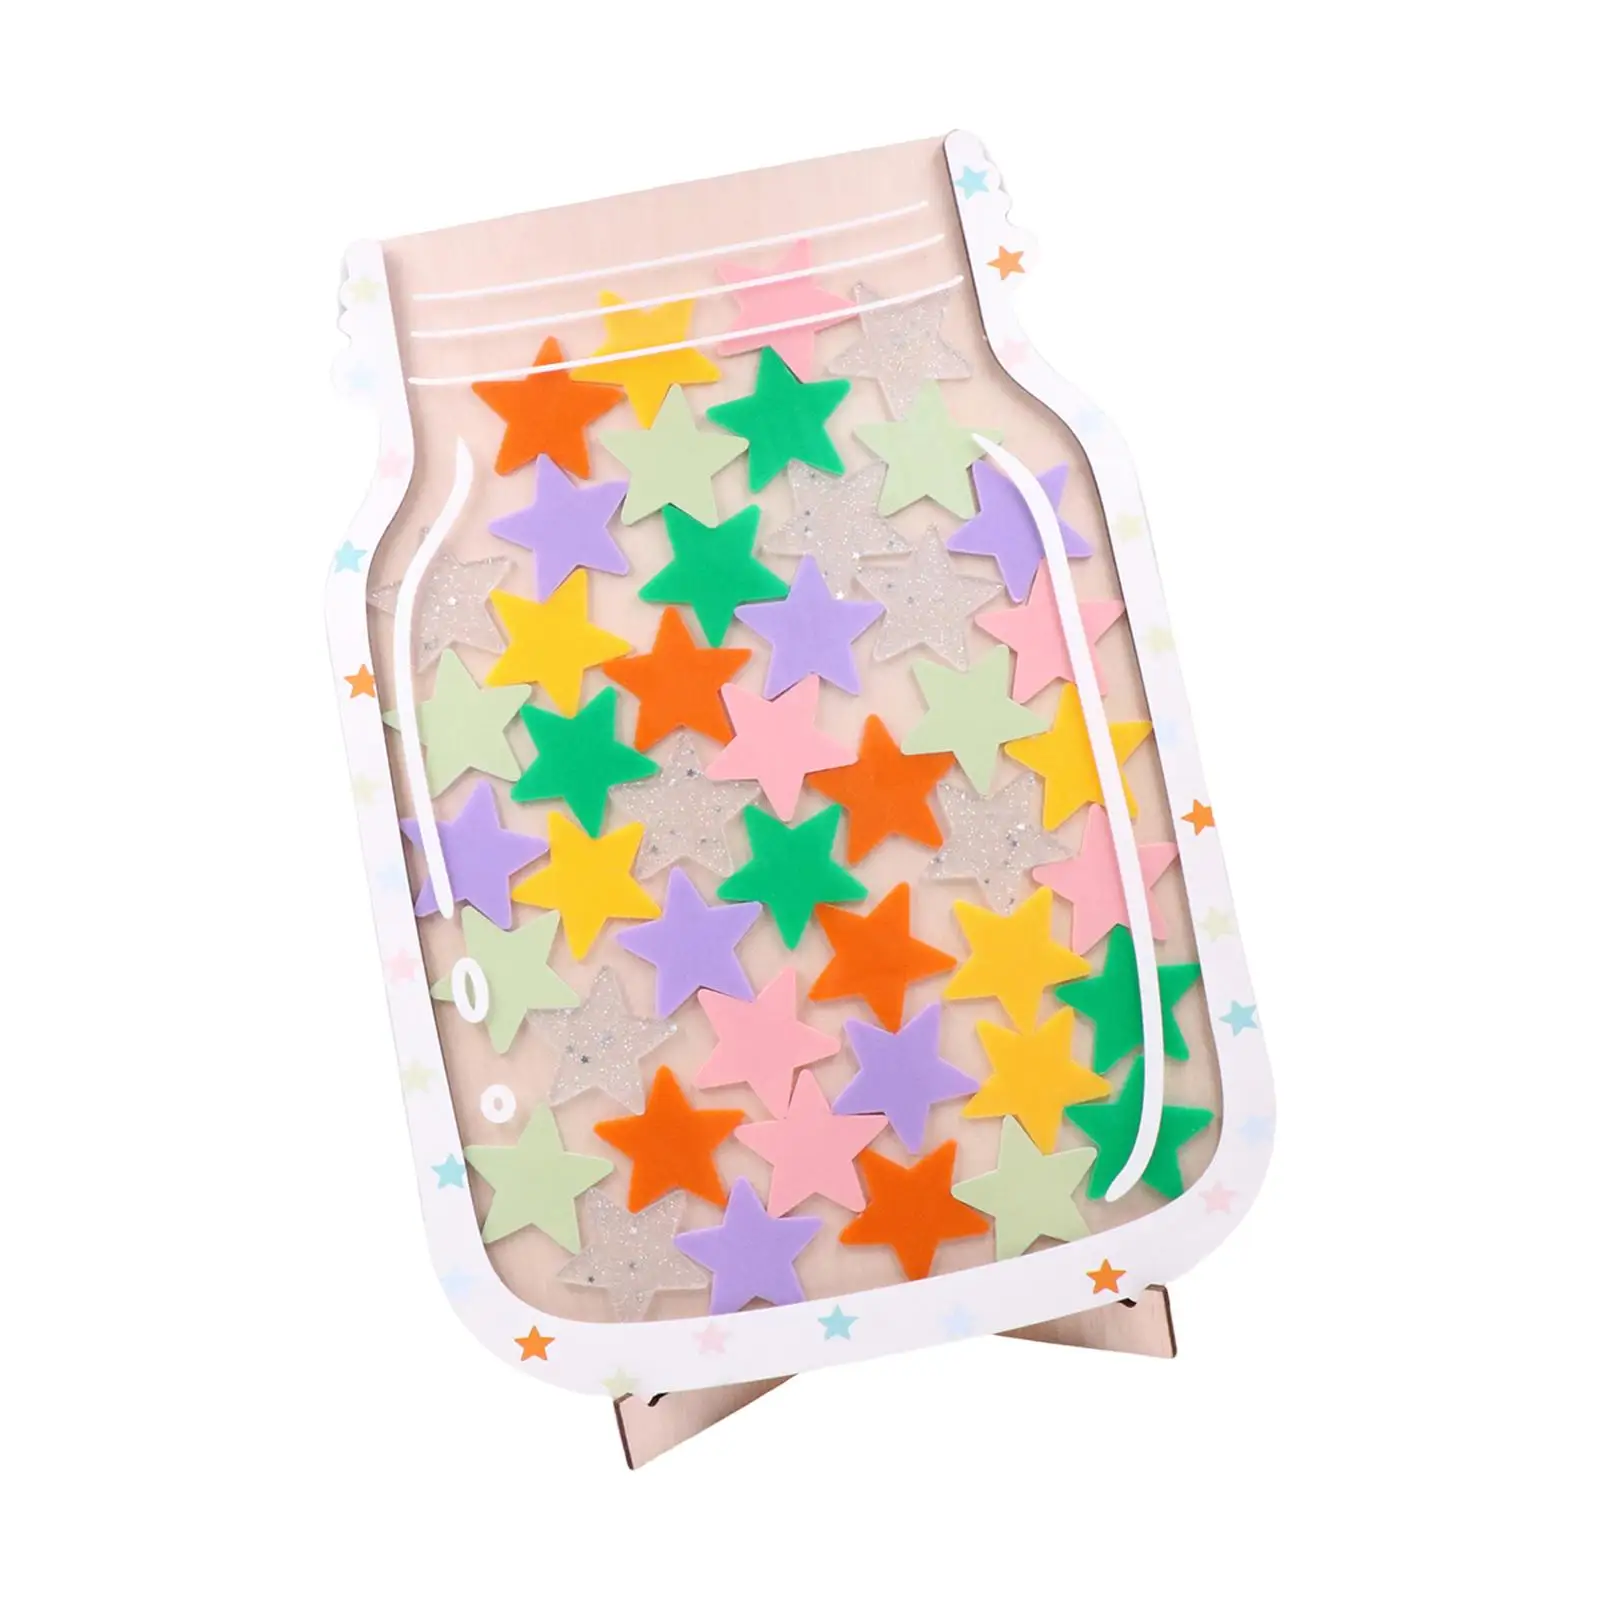 Star Reward Jar Gifts Children Positive Behavior Jar for Whiteboard Teaching Toilet Training Chores Brushing Positive Behaviors